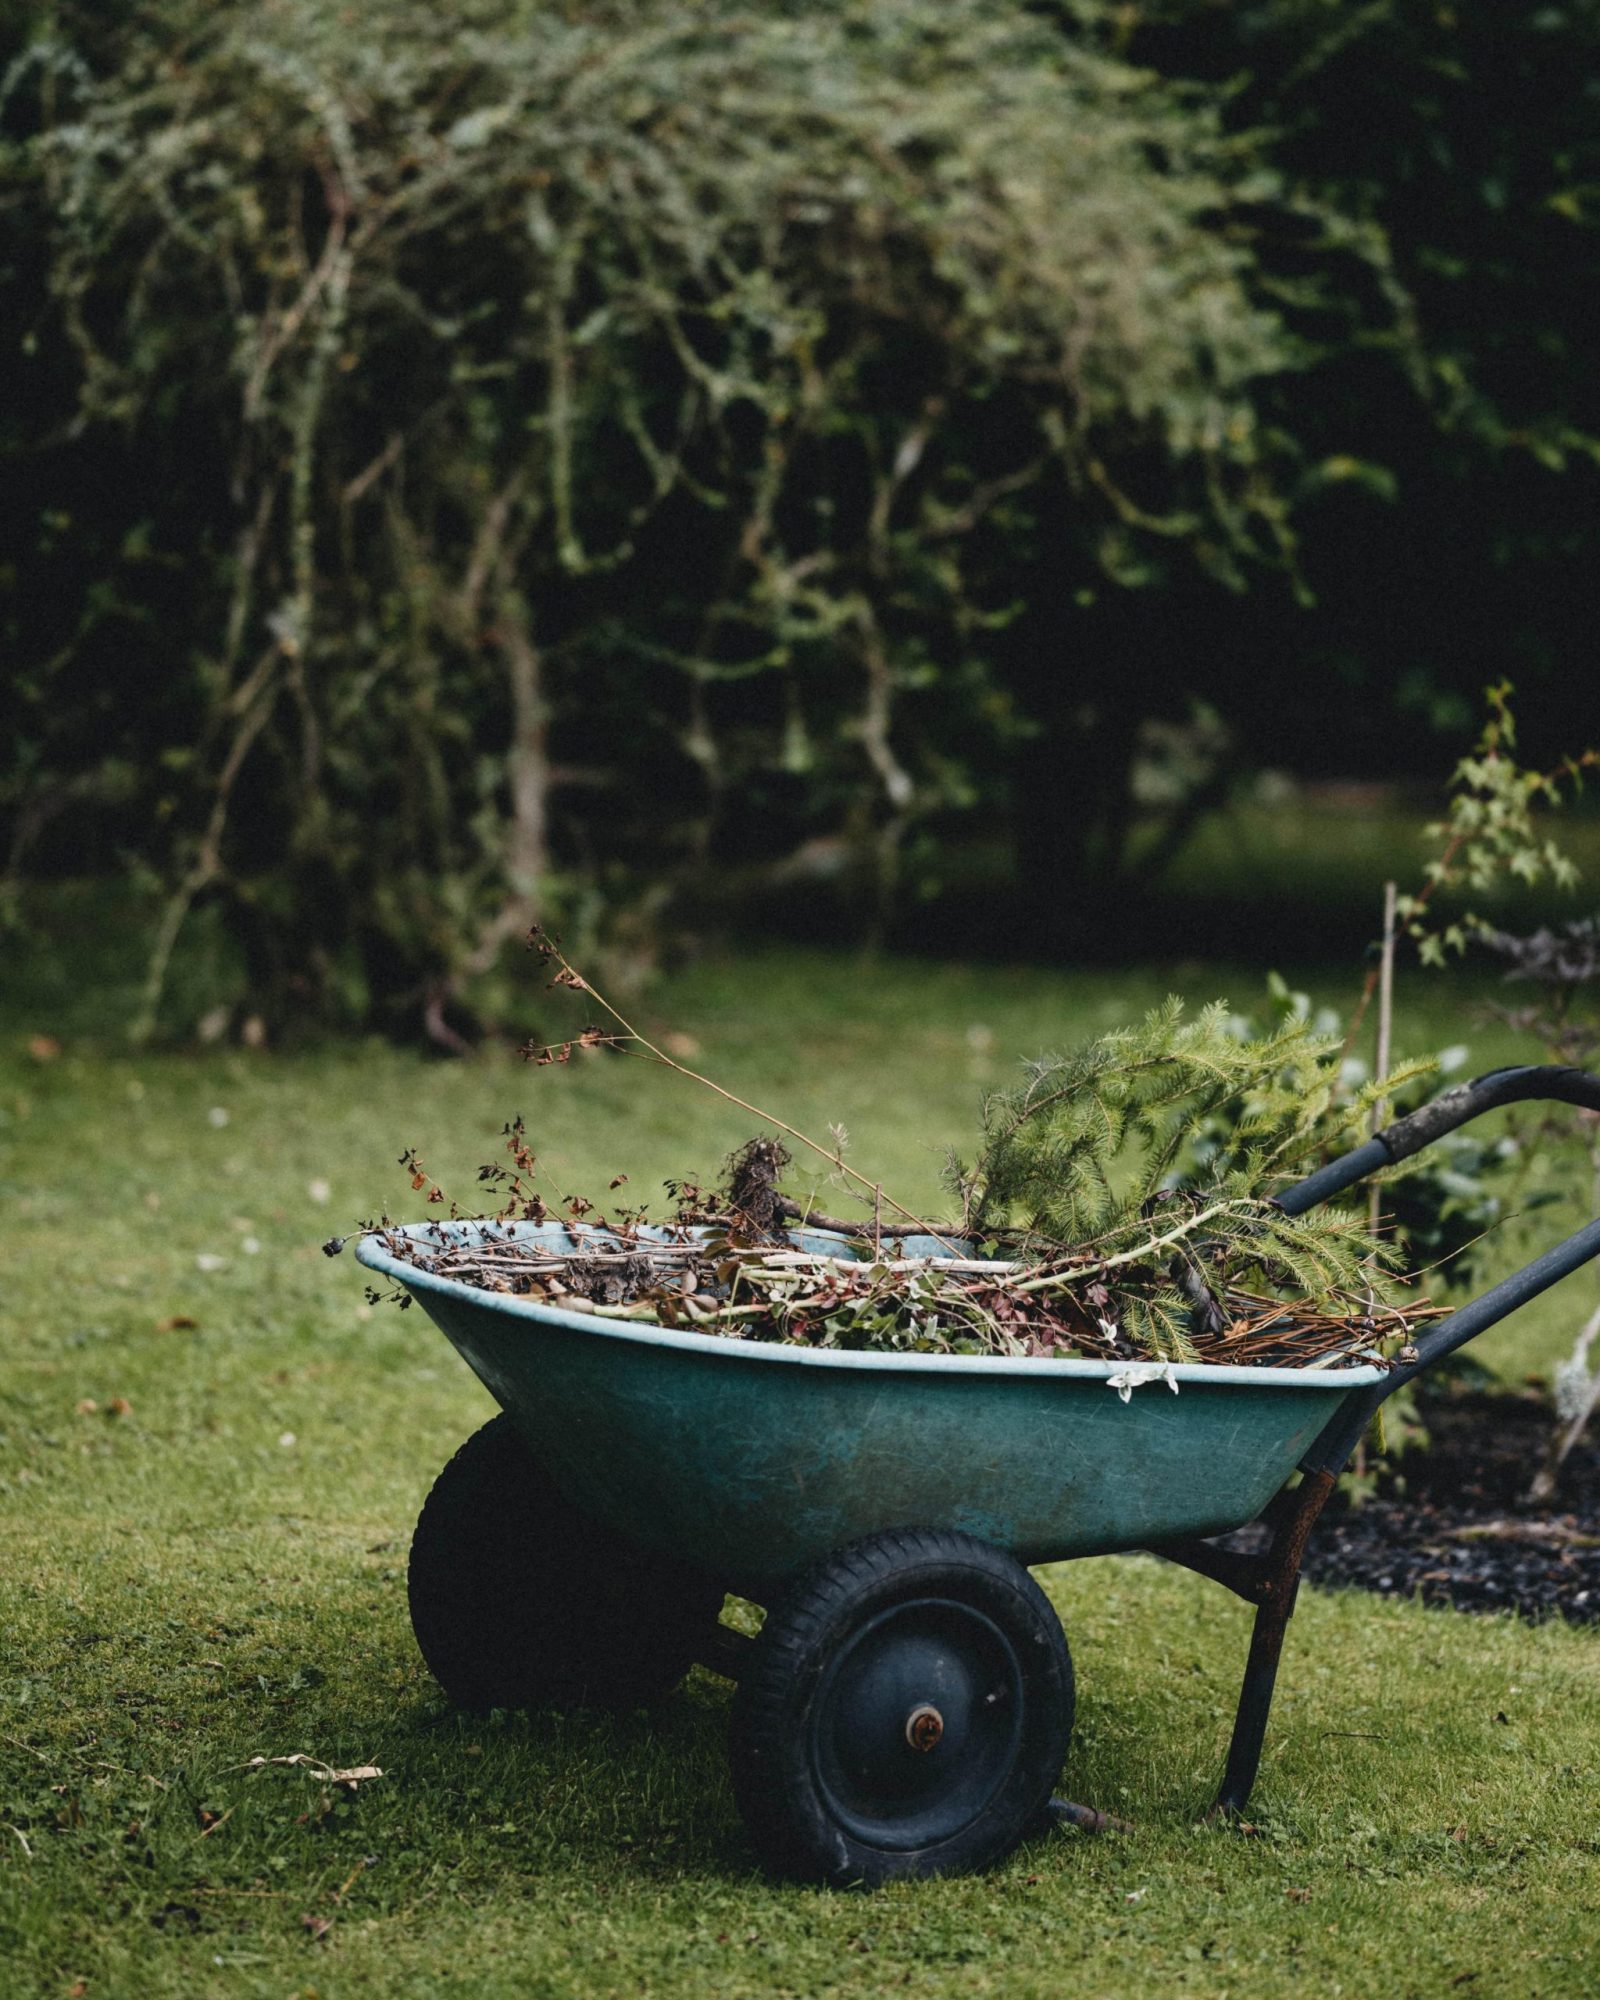 Green garden waste in a wheelbarrow in a back garden